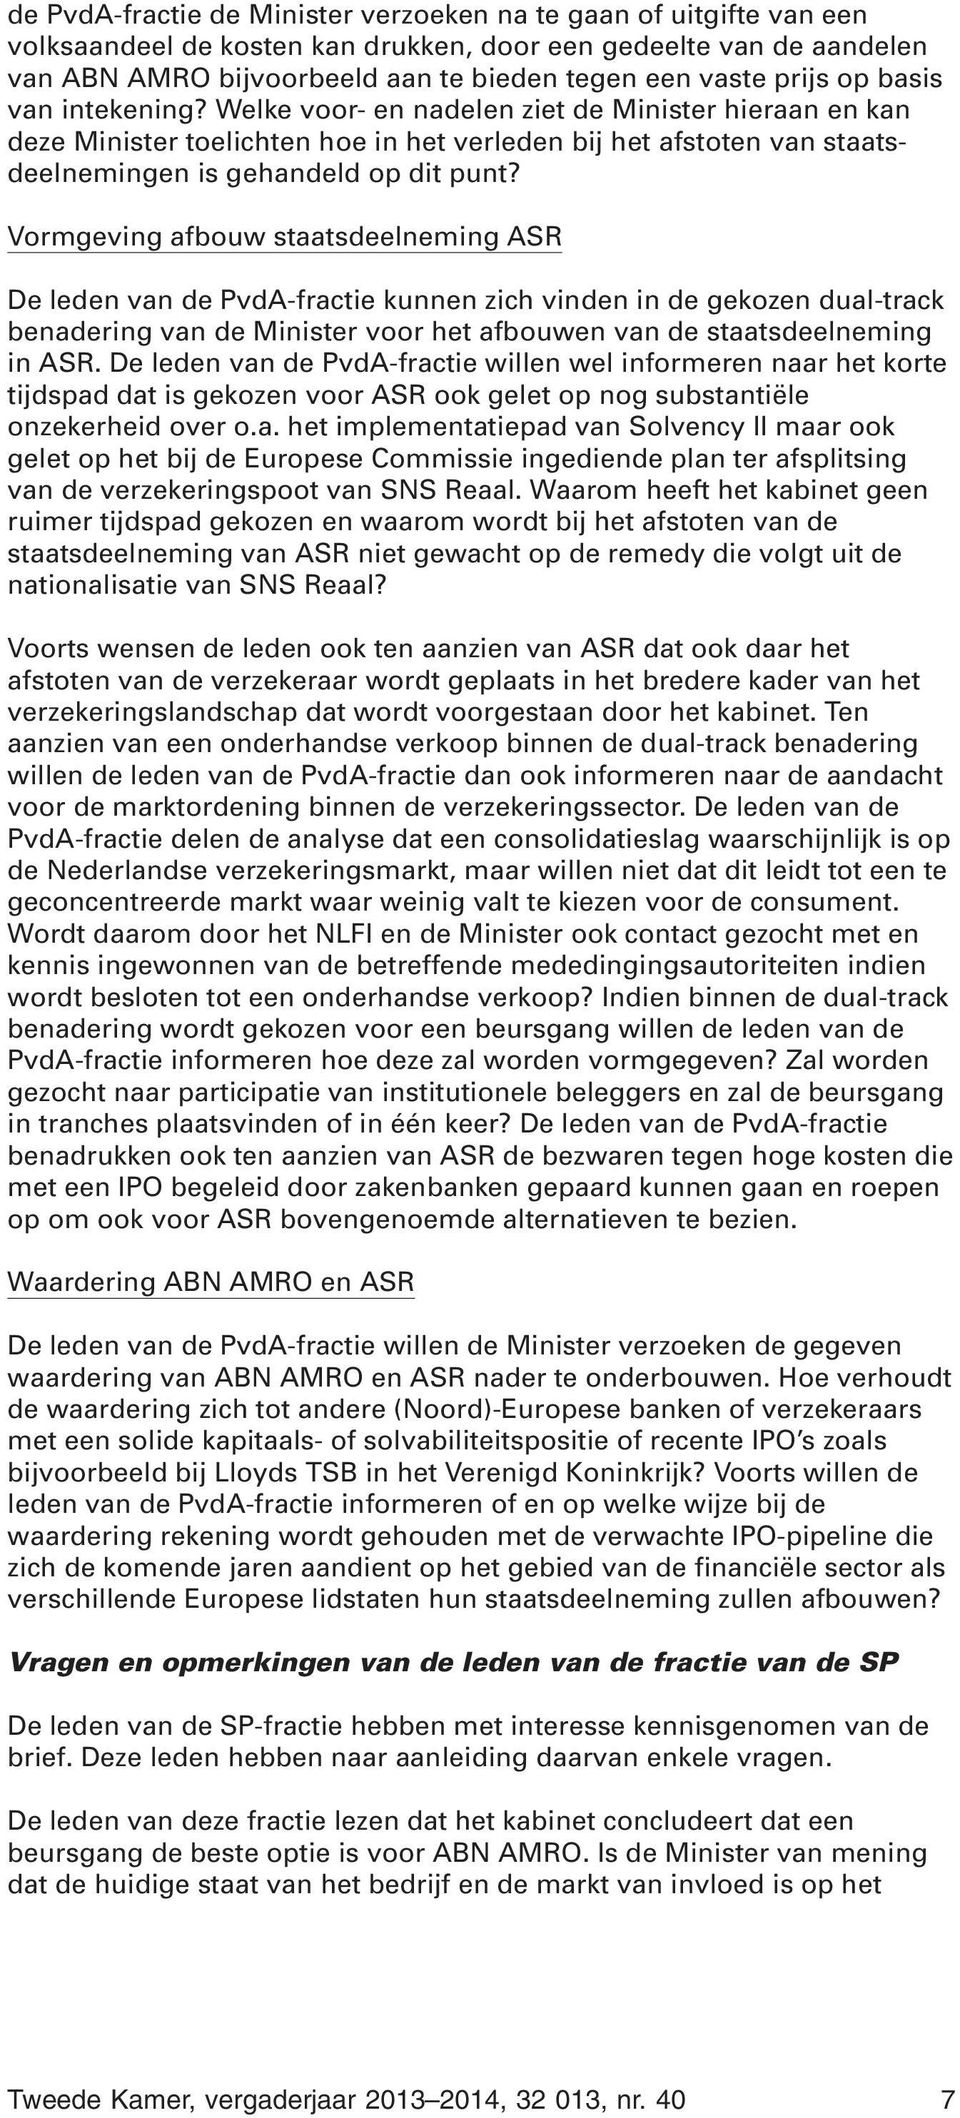 Vormgeving afbouw staatsdeelneming ASR De leden van de PvdA-fractie kunnen zich vinden in de gekozen dual-track benadering van de Minister voor het afbouwen van de staatsdeelneming in ASR.